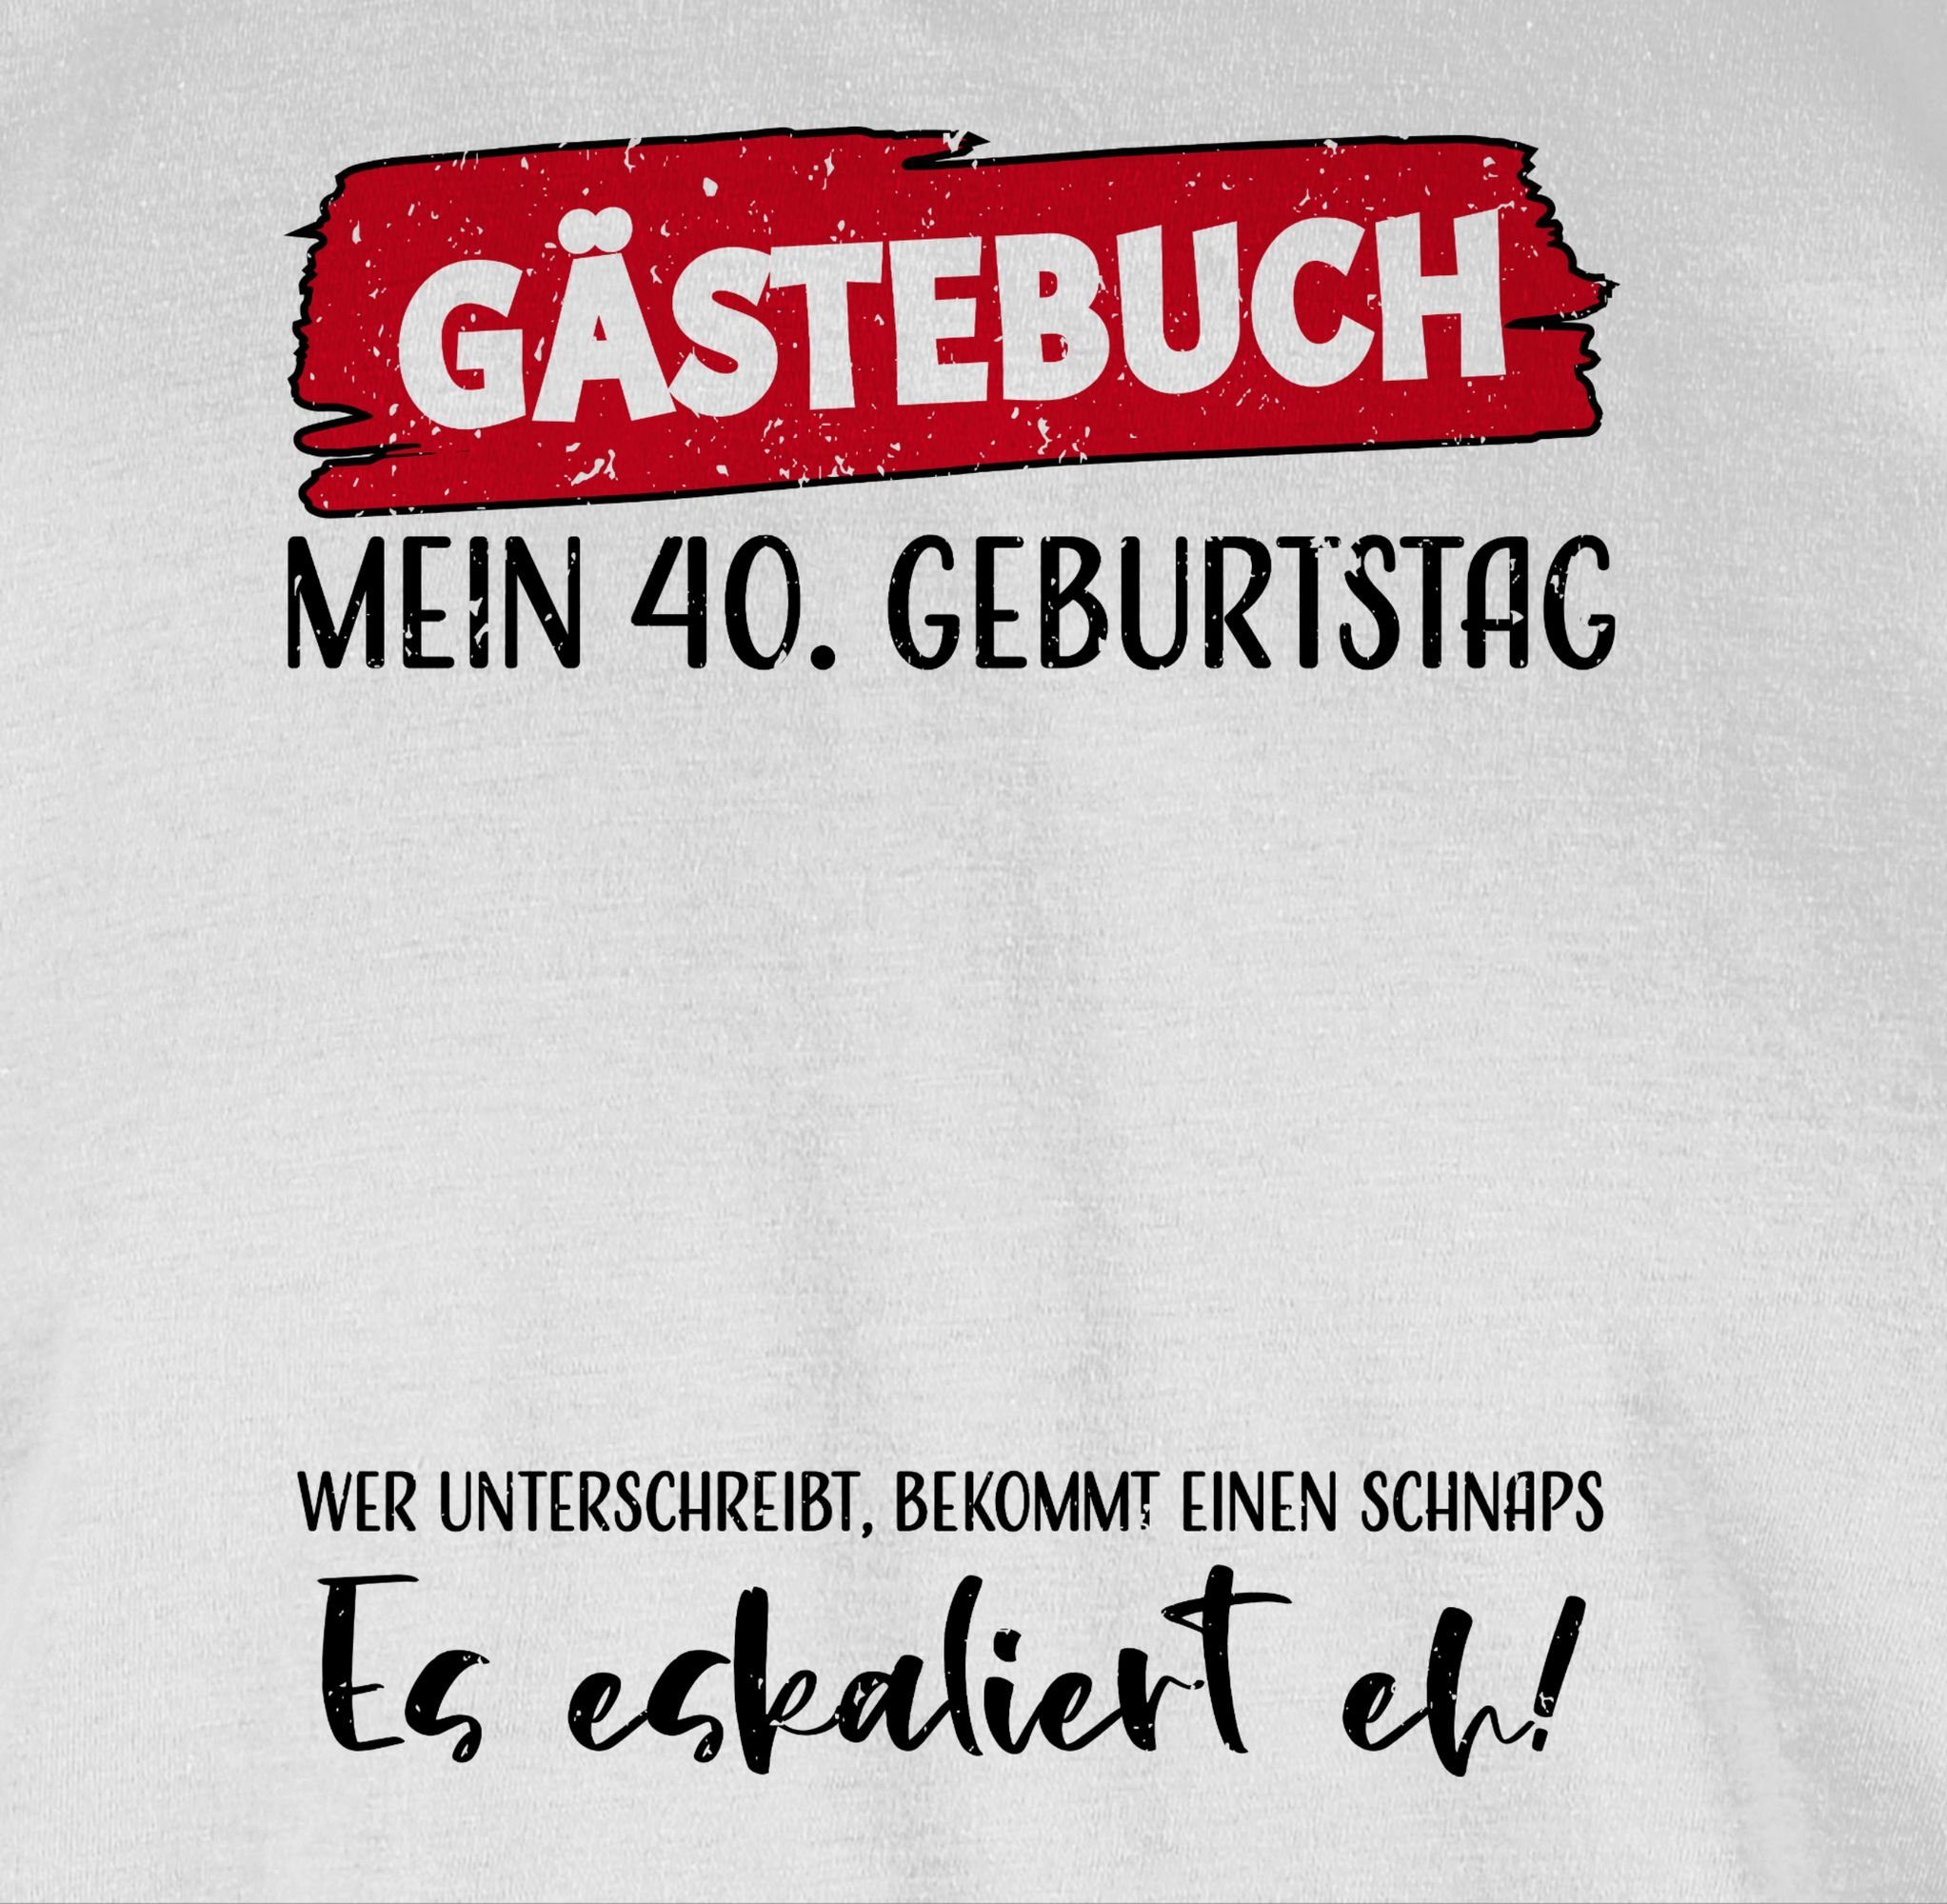 01 Geburtstag Gästebuch Weiß 40. 40. T-Shirt Shirtracer Geburtstag